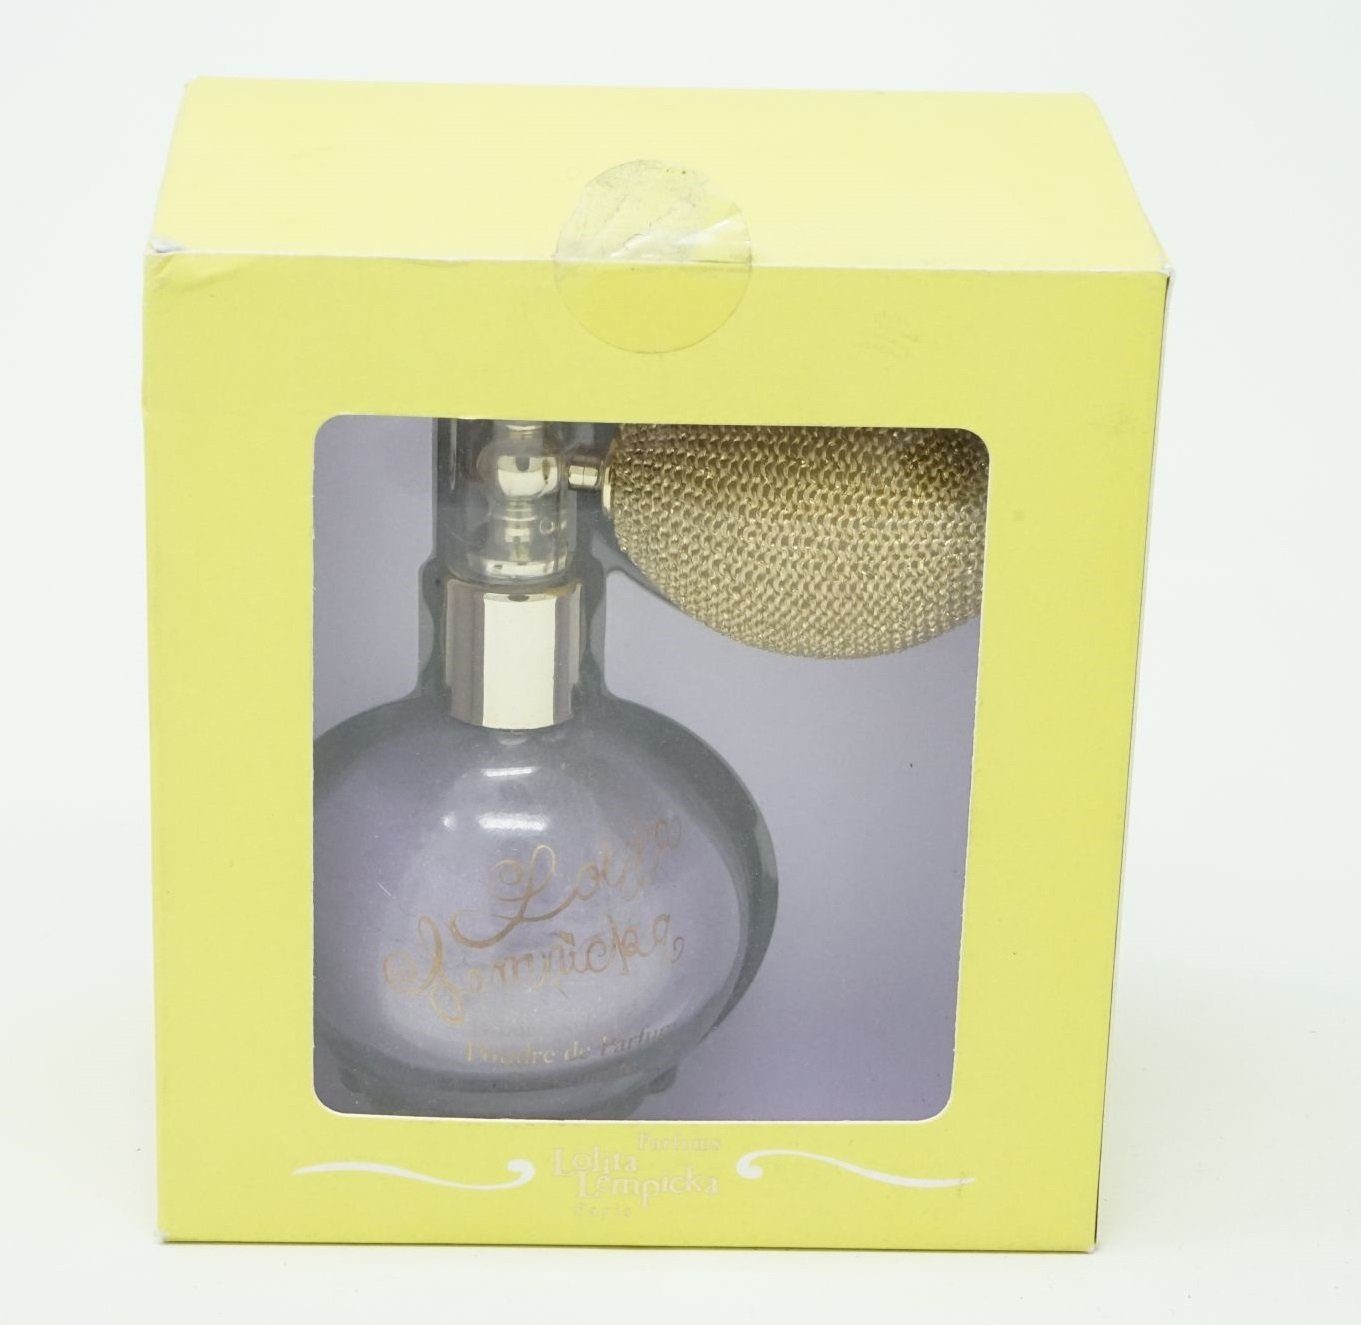 Lolita Lempicka Öl-Parfüm Lolita Powdered 17,2g Perfume Shimmering Lempicka